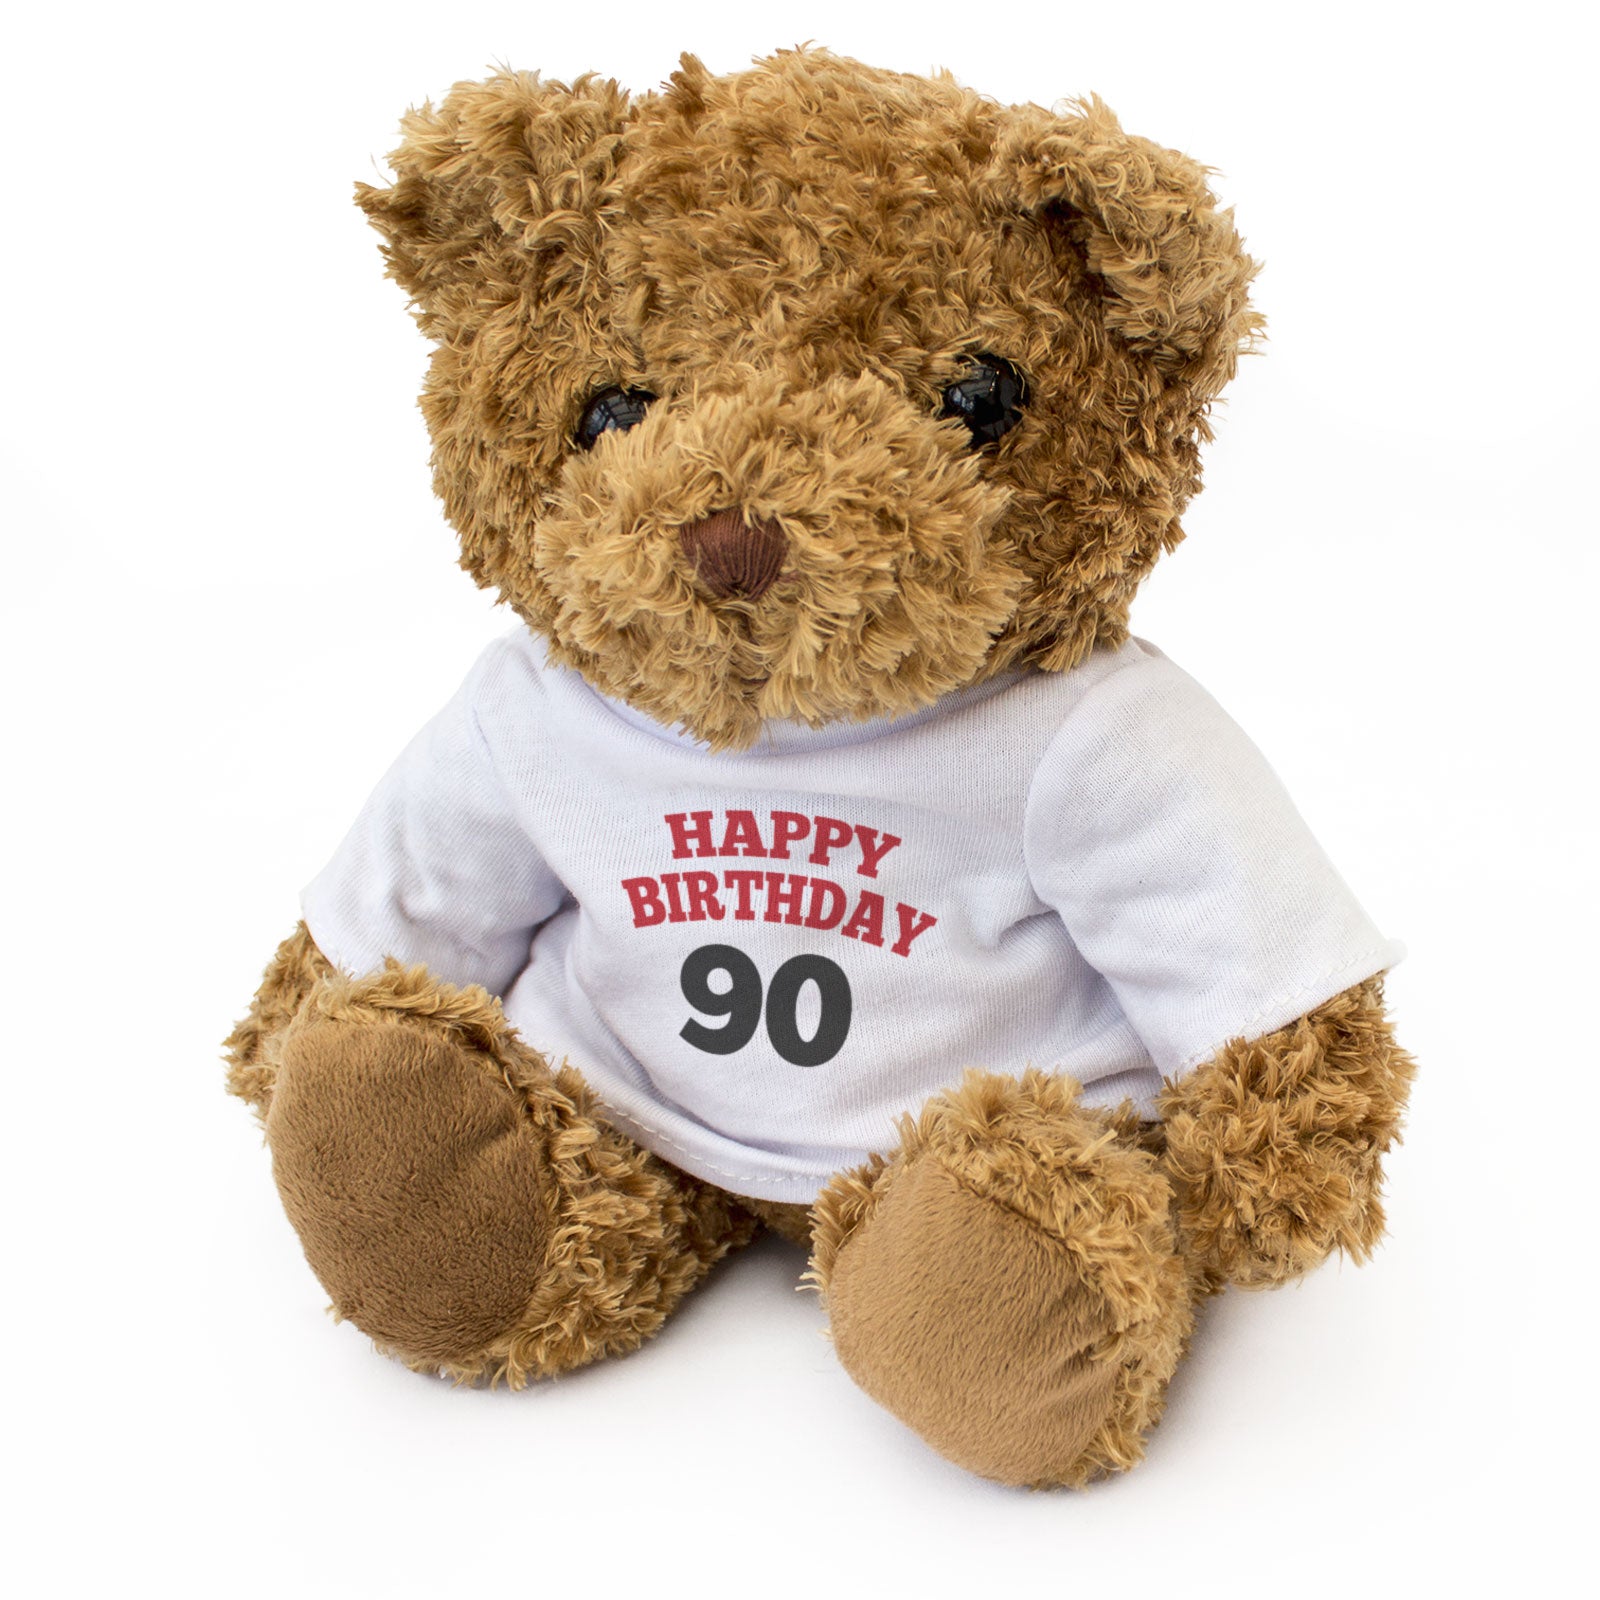 Happy Birthday Age 90 Teddy Bear